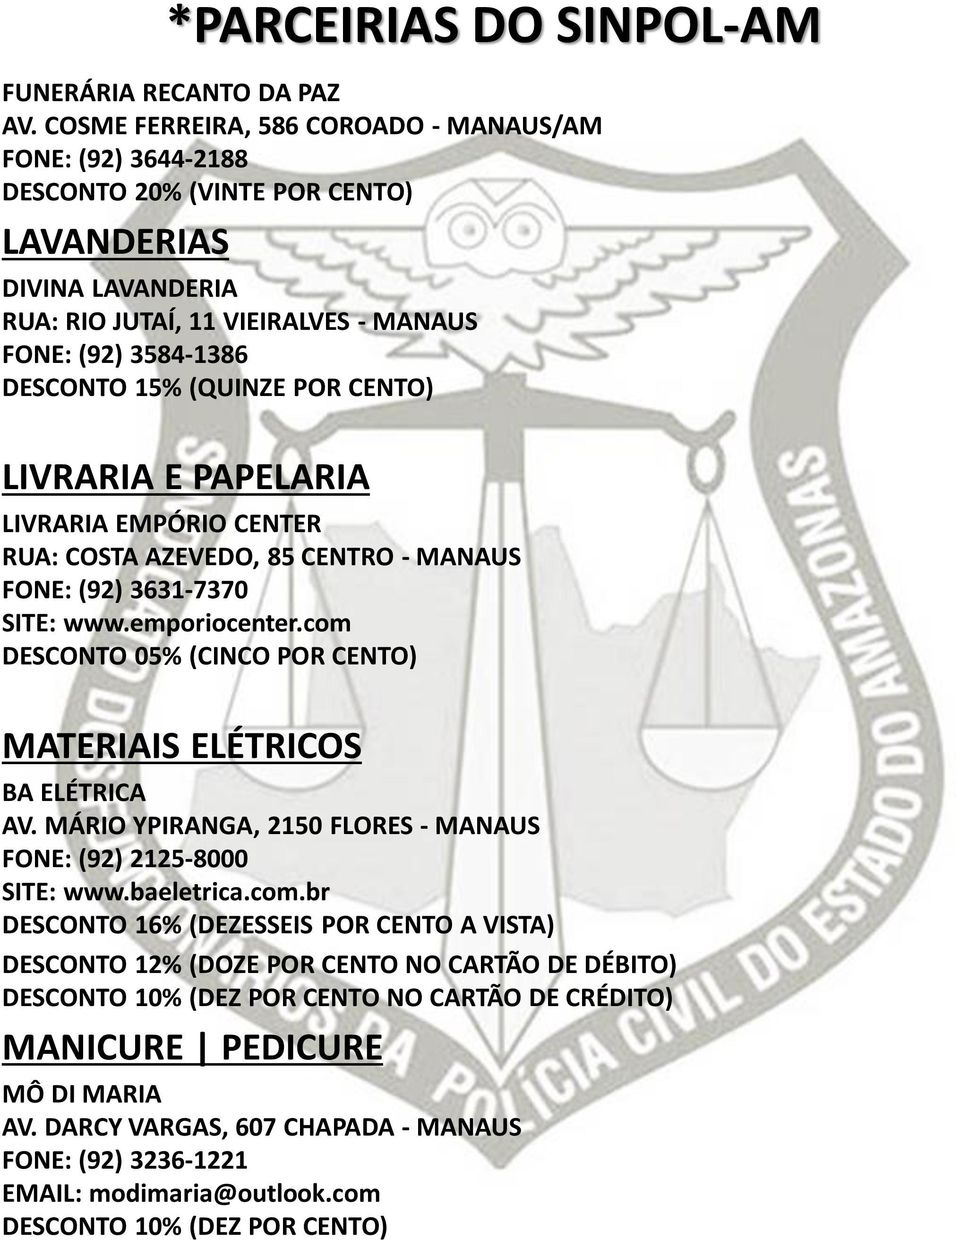 LIVRARIA E PAPELARIA LIVRARIA EMPÓRIO CENTER RUA: COSTA AZEVEDO, 85 CENTRO - MANAUS FONE: (92) 3631-7370 SITE: www.emporiocenter.